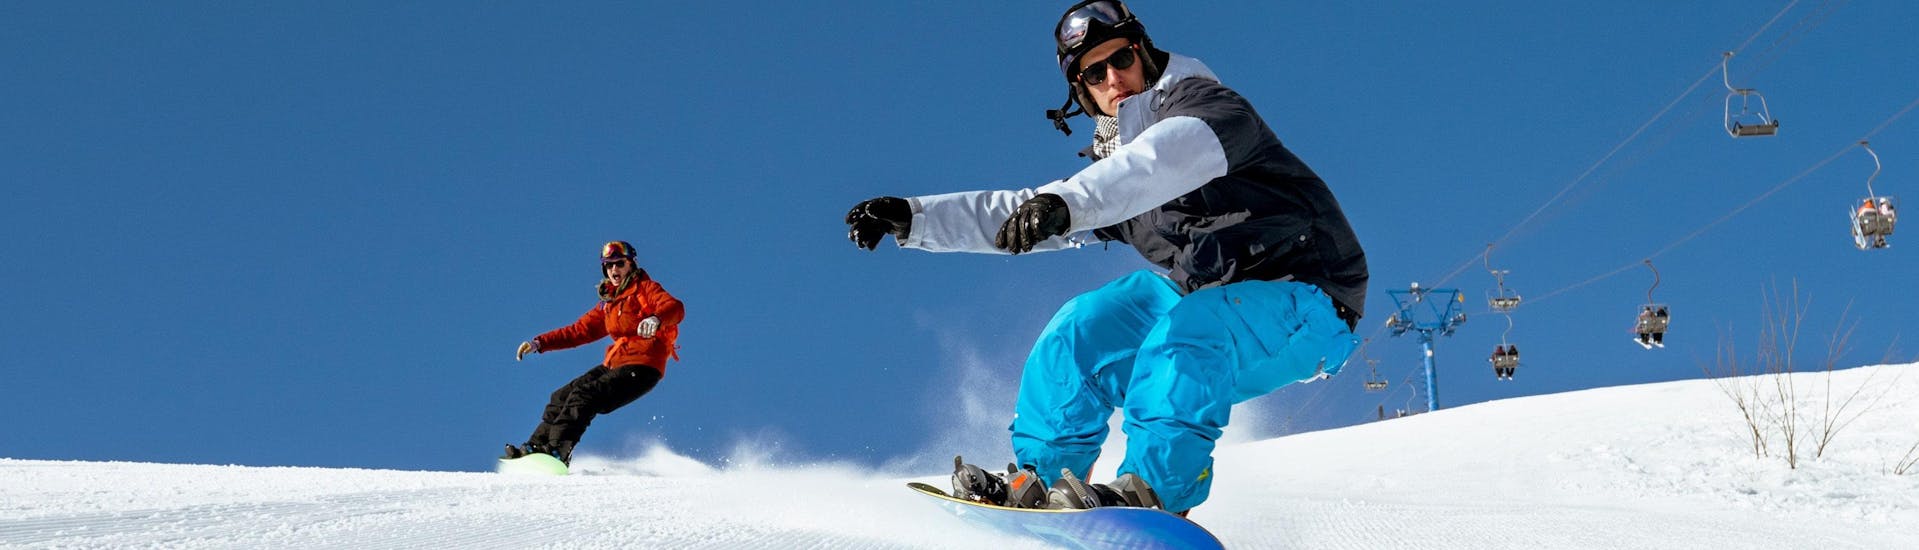 Dos snowboarders se deslizan por una pista recién preparada durante sus clases de snowboard.